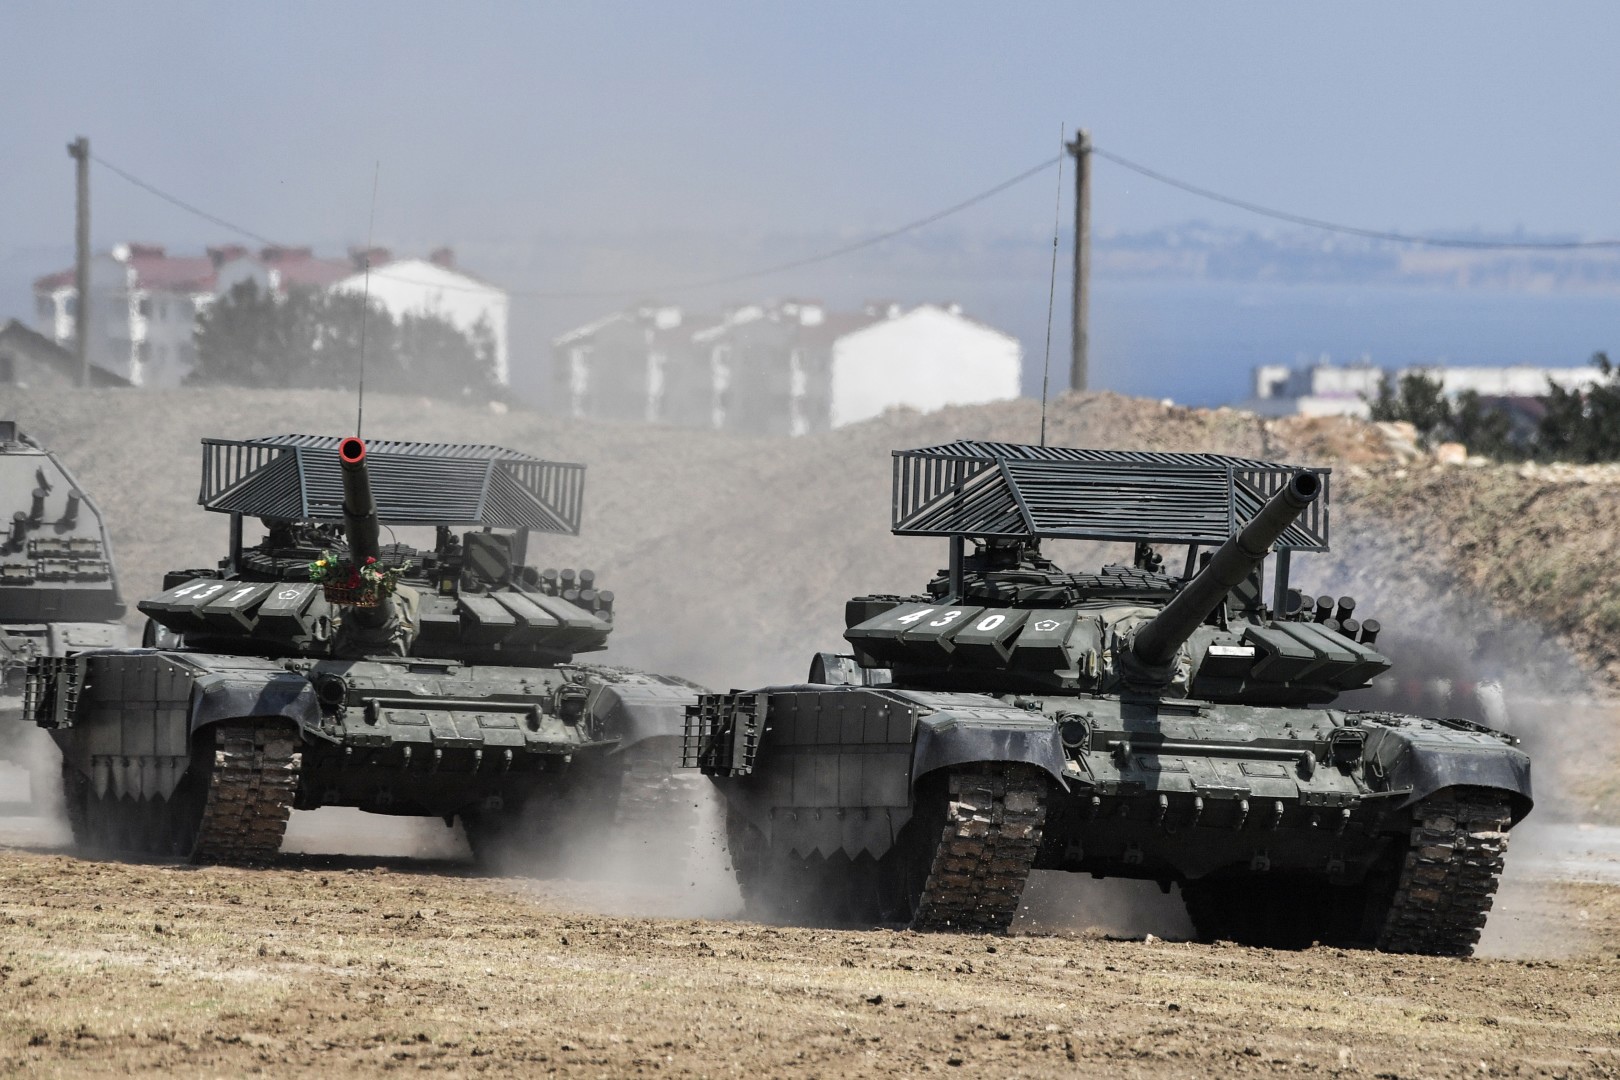 Чешские военные считают, что массовое оснащение российских танков защитой от ПТРК и БПЛА доказывает подготовку к грядущему вторжению в Украину